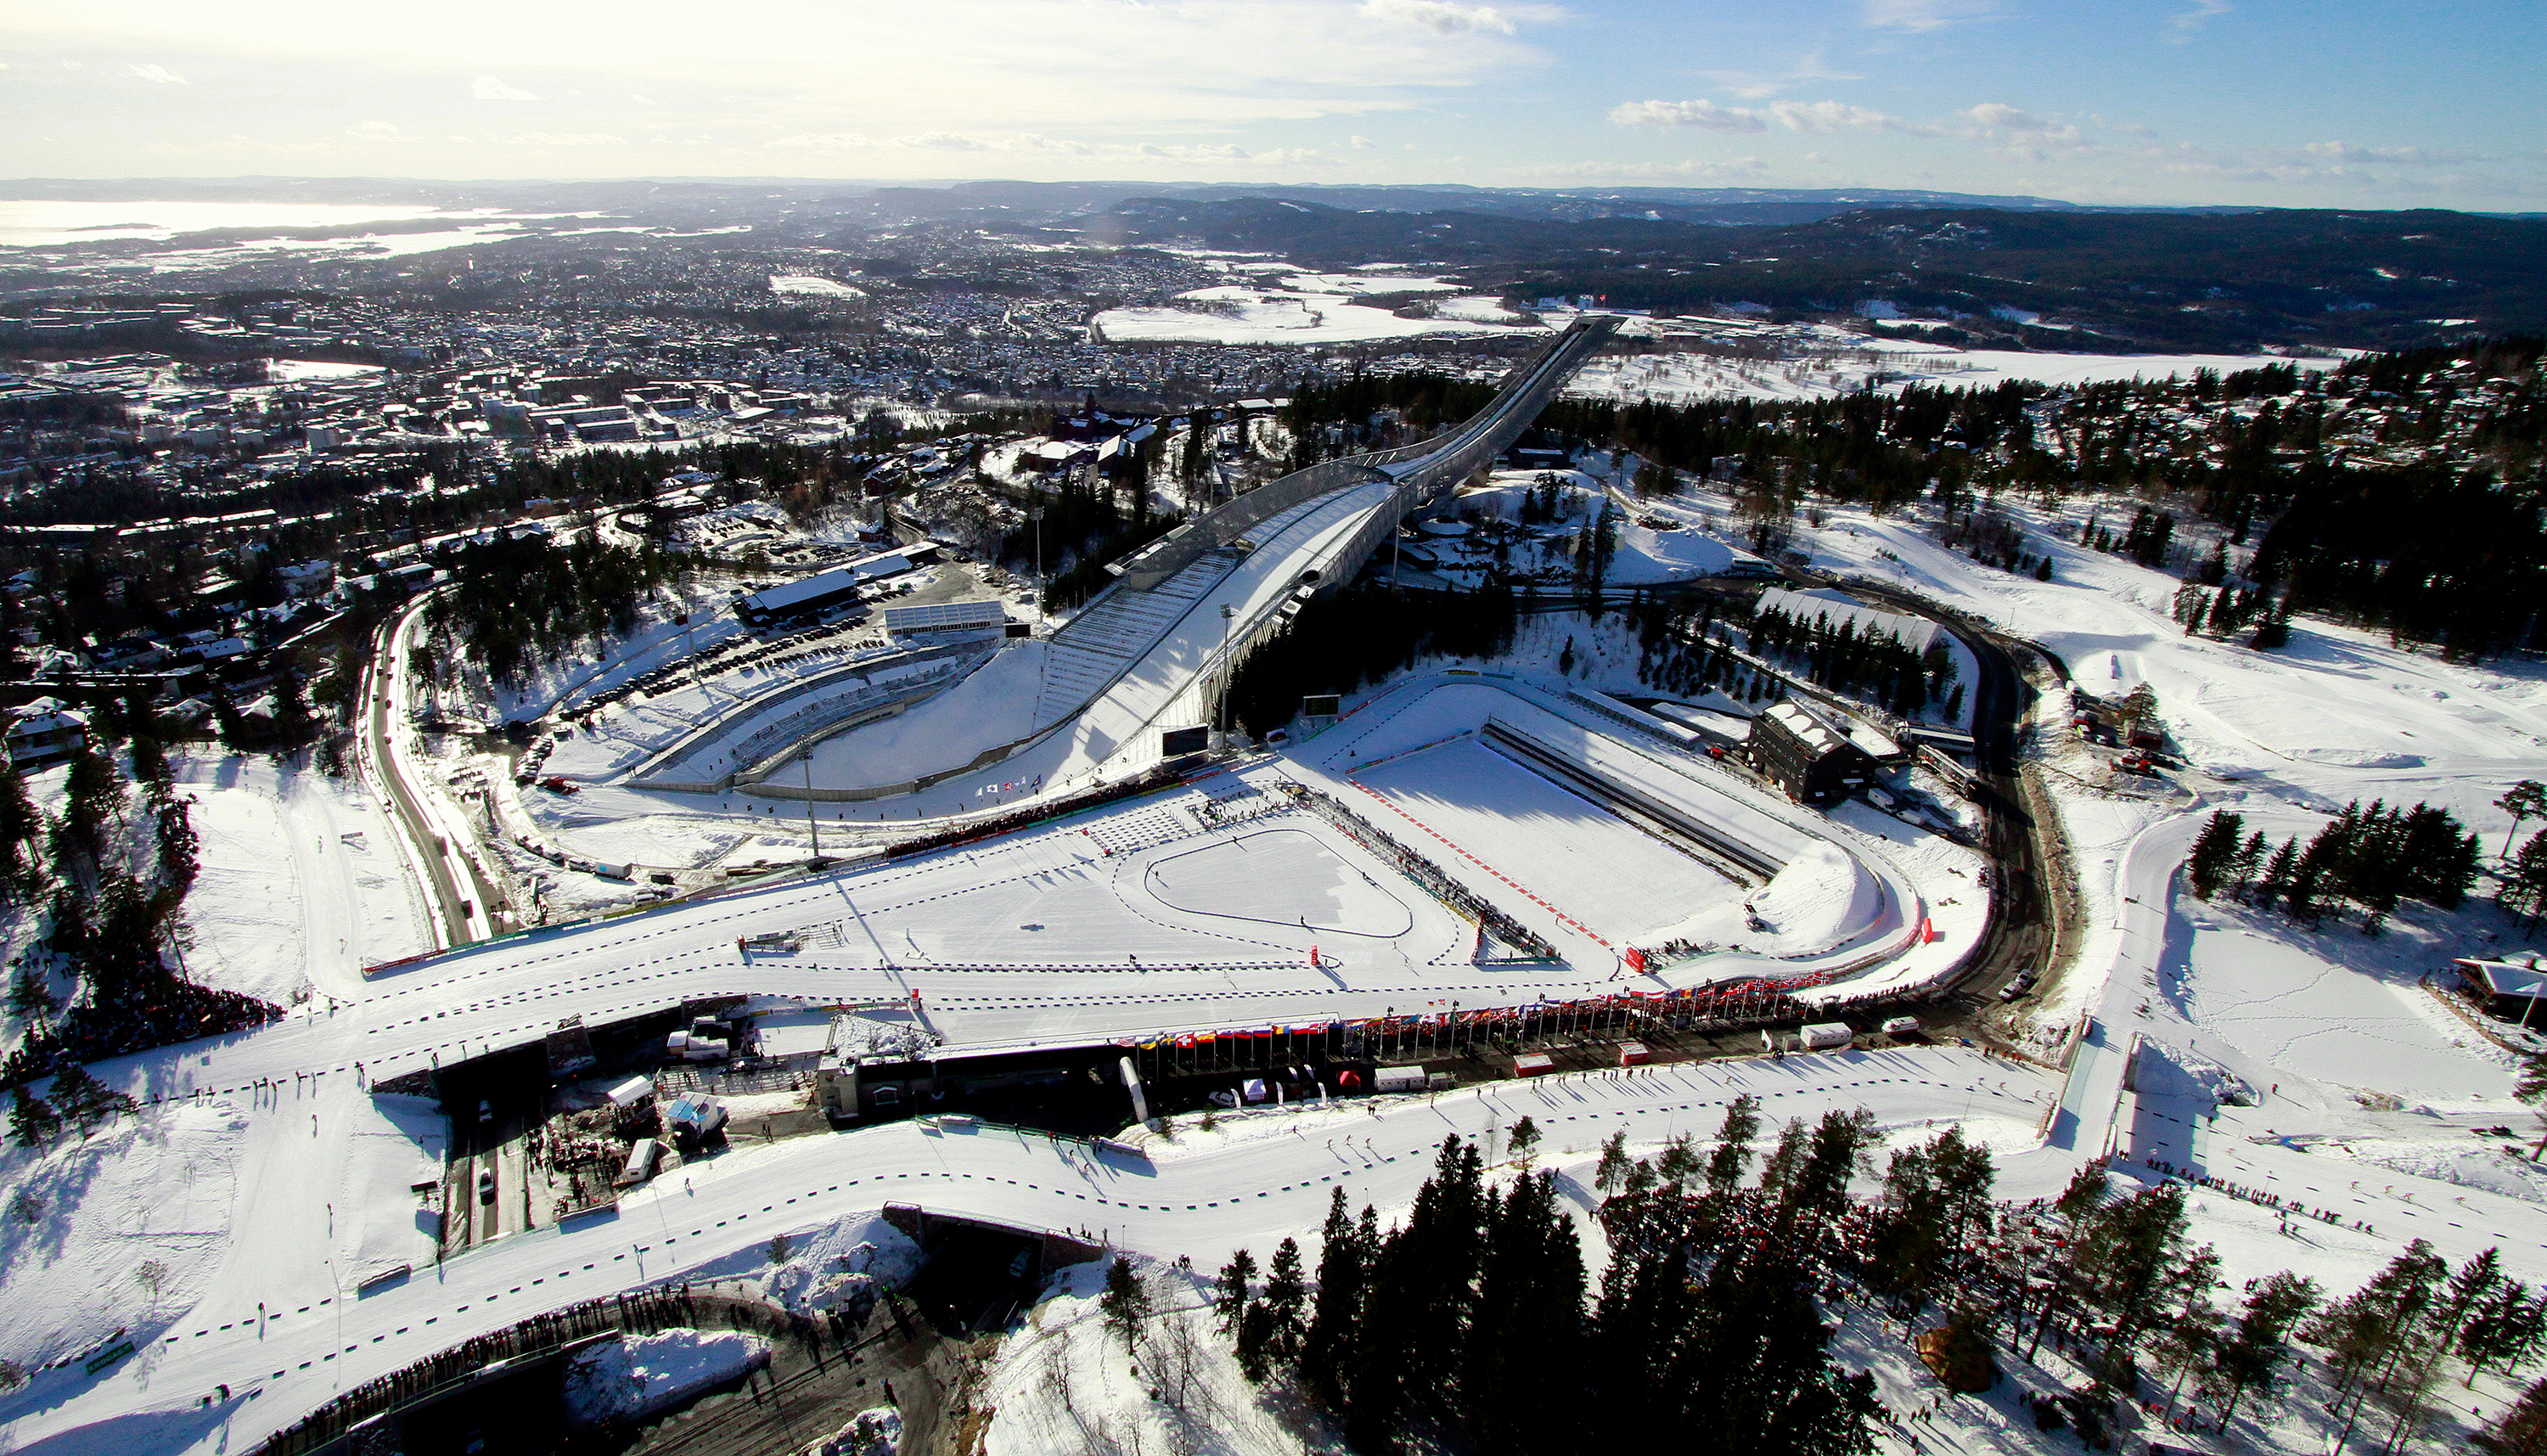 VM-skiskyting-arena-(c)Oslo2016.jpg?t=ScaleToFill%7C1450x720&ts=XqsW6bKcLKdVYu%2FKdV2DpwfX5RE%3D&pr=2.625